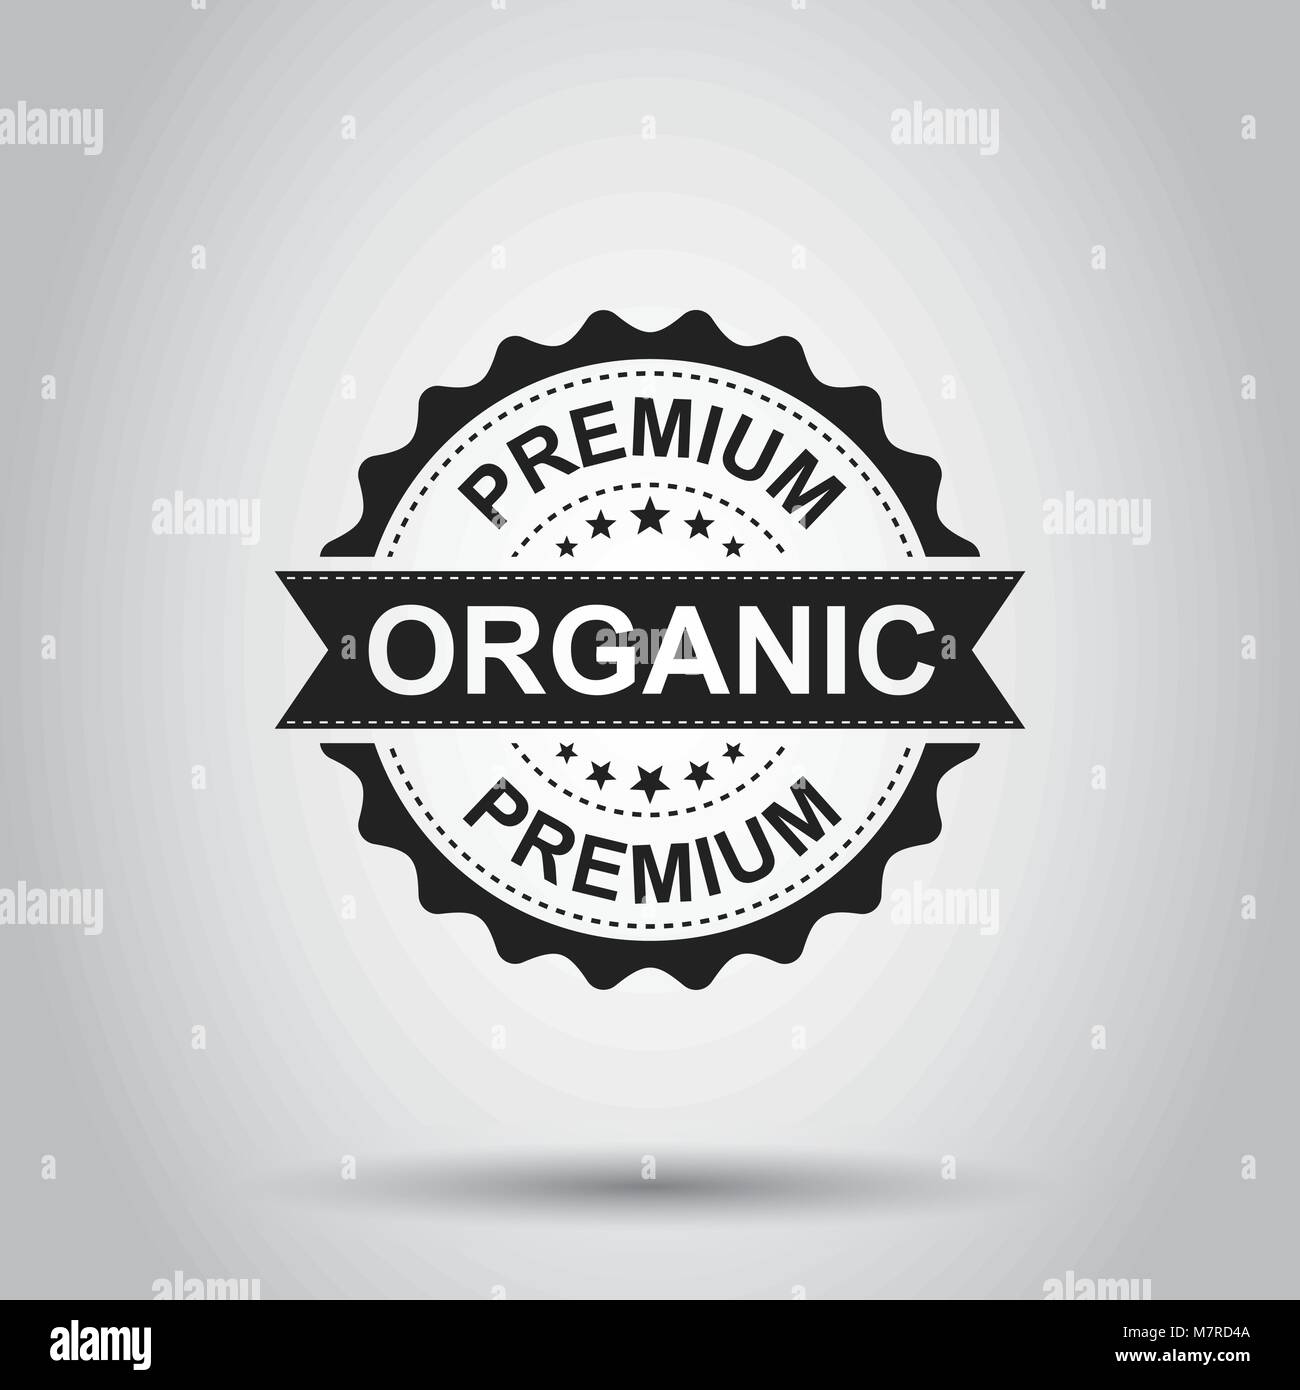 Premium organic grunge timbro di gomma. Illustrazione Vettoriale su sfondo bianco. Il concetto di Business organici naturali pittogramma di timbro. Illustrazione Vettoriale